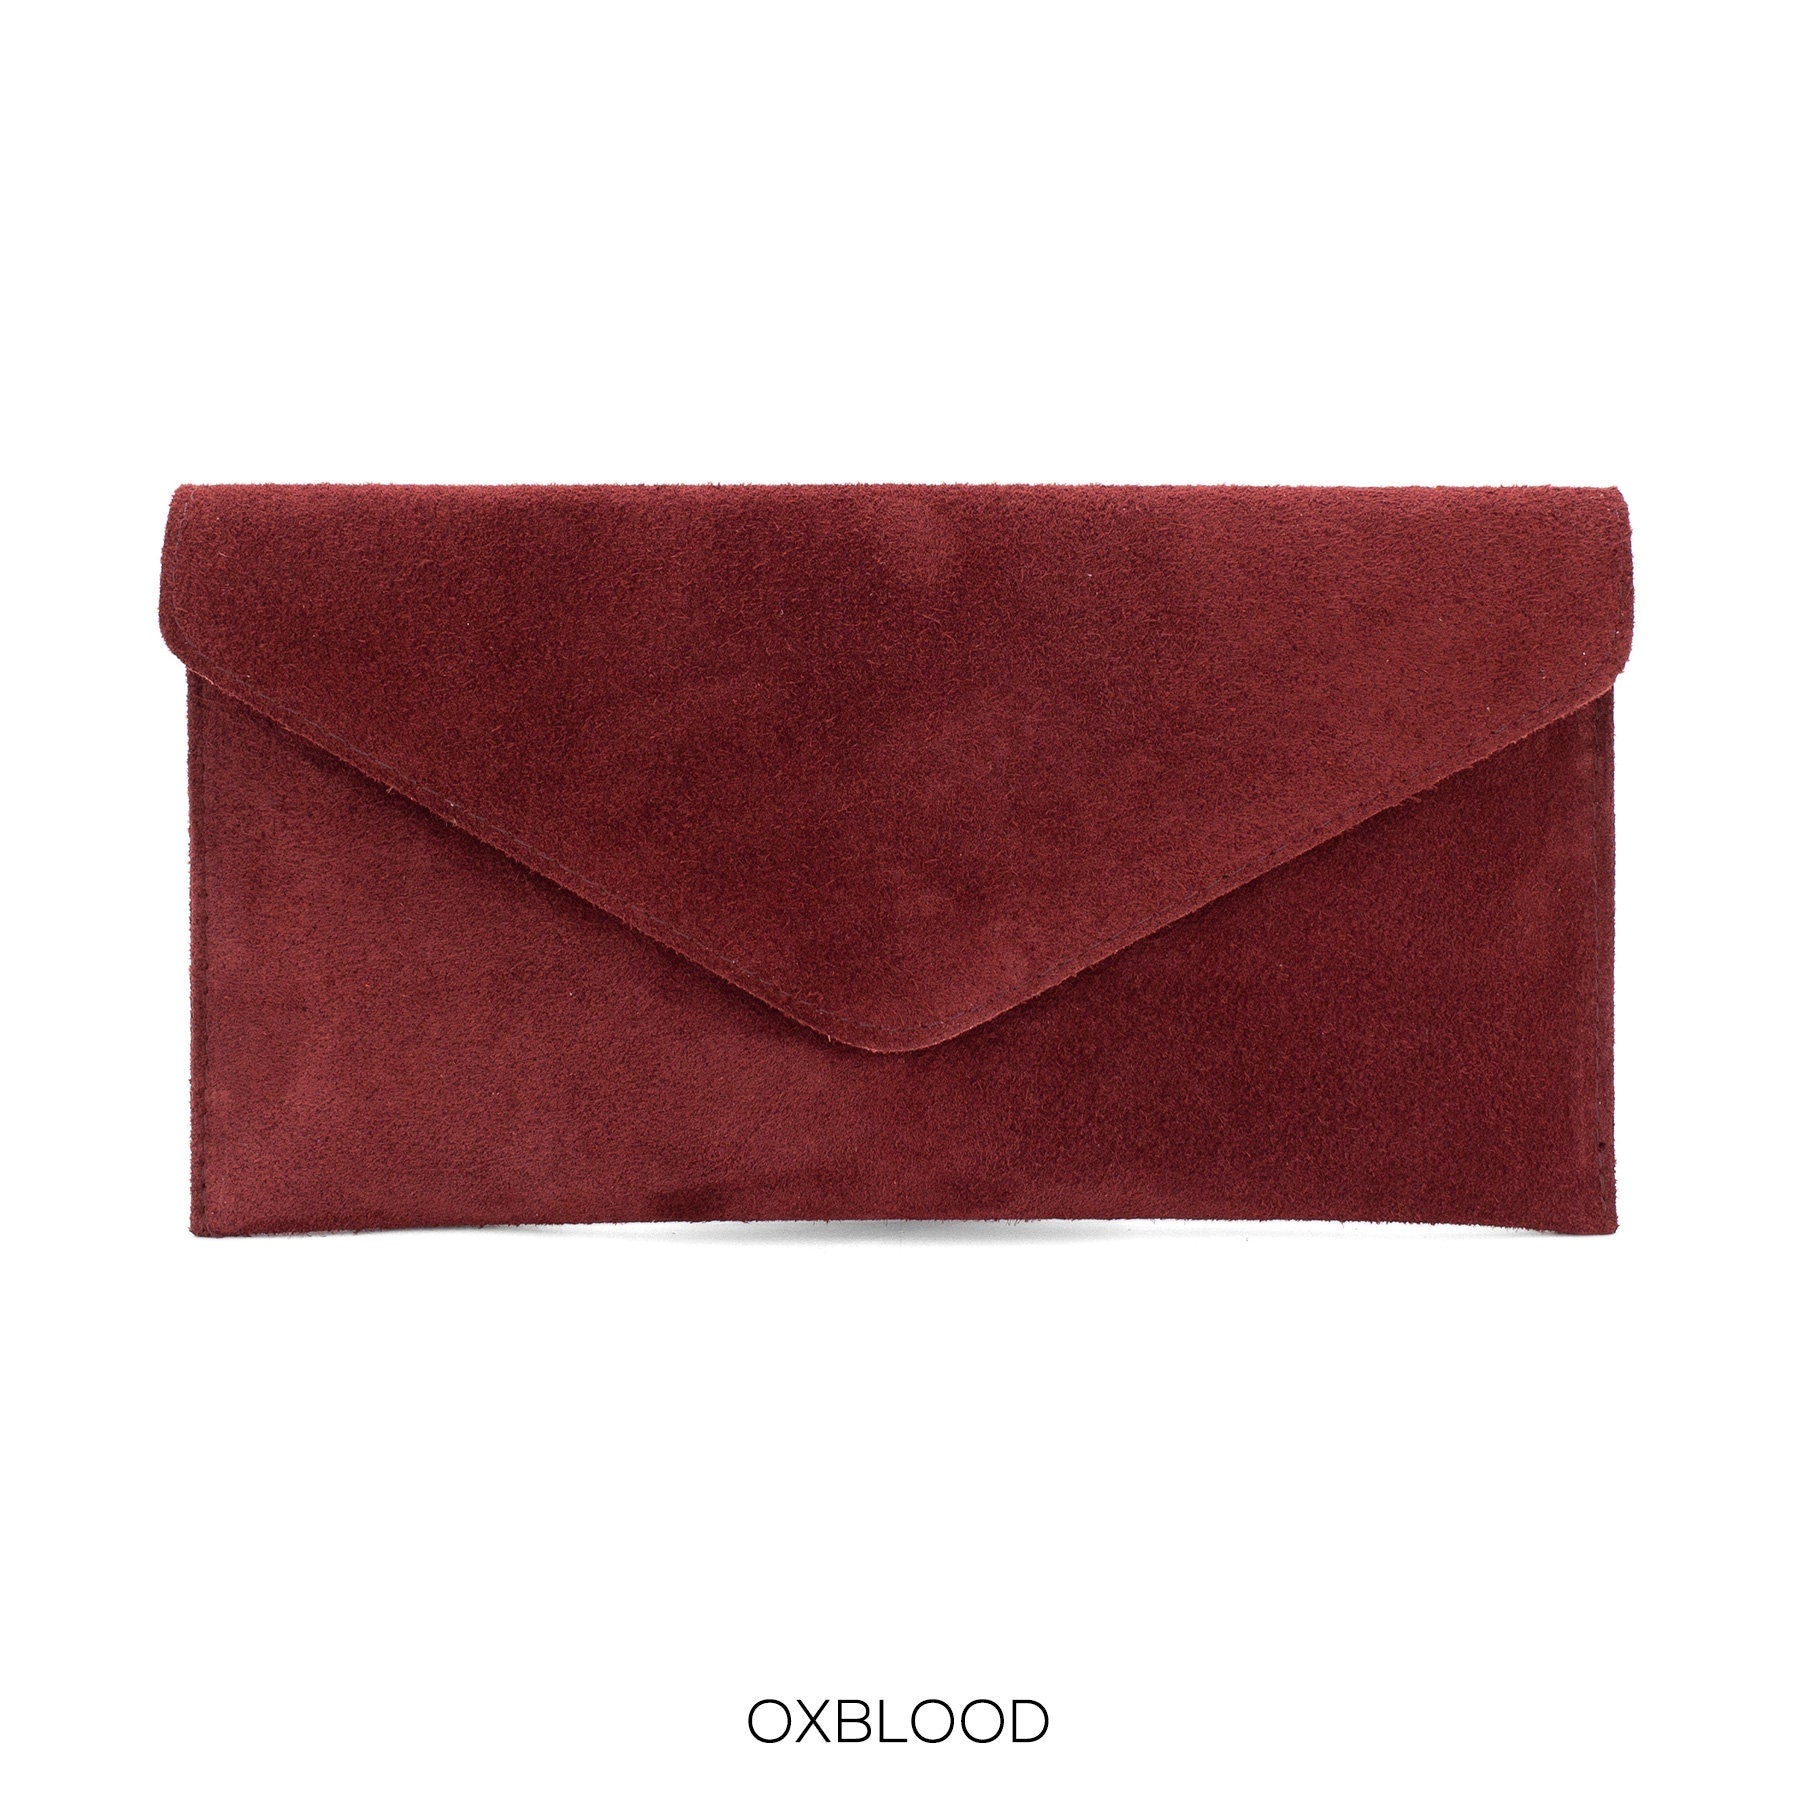 Maroon Burgundy envelope clutch bag